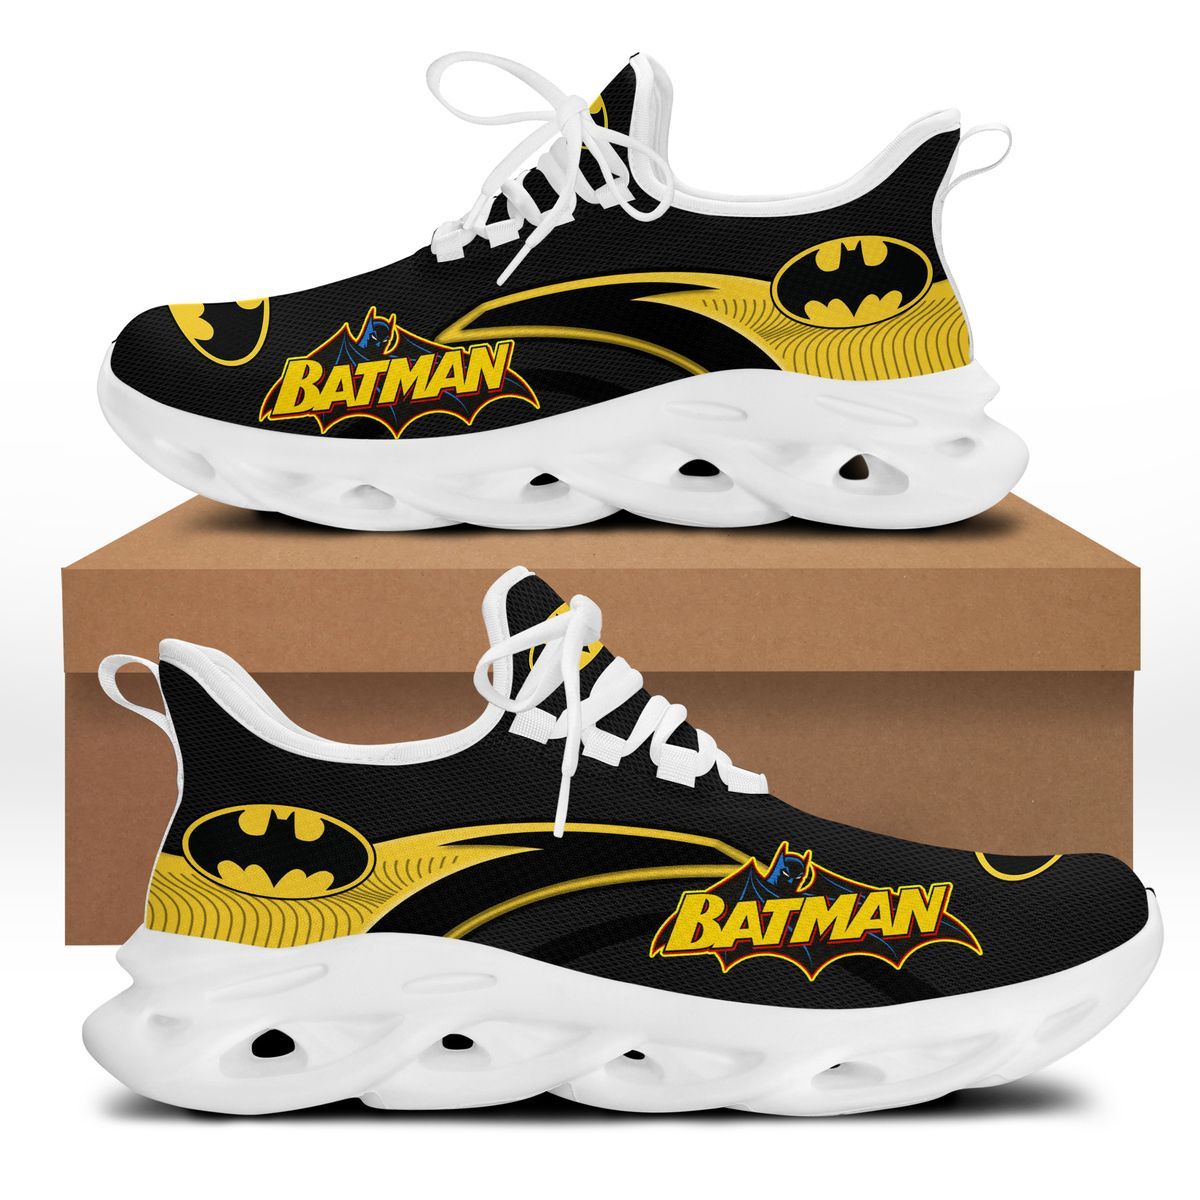 Batman Clunky Max soul shoes 5